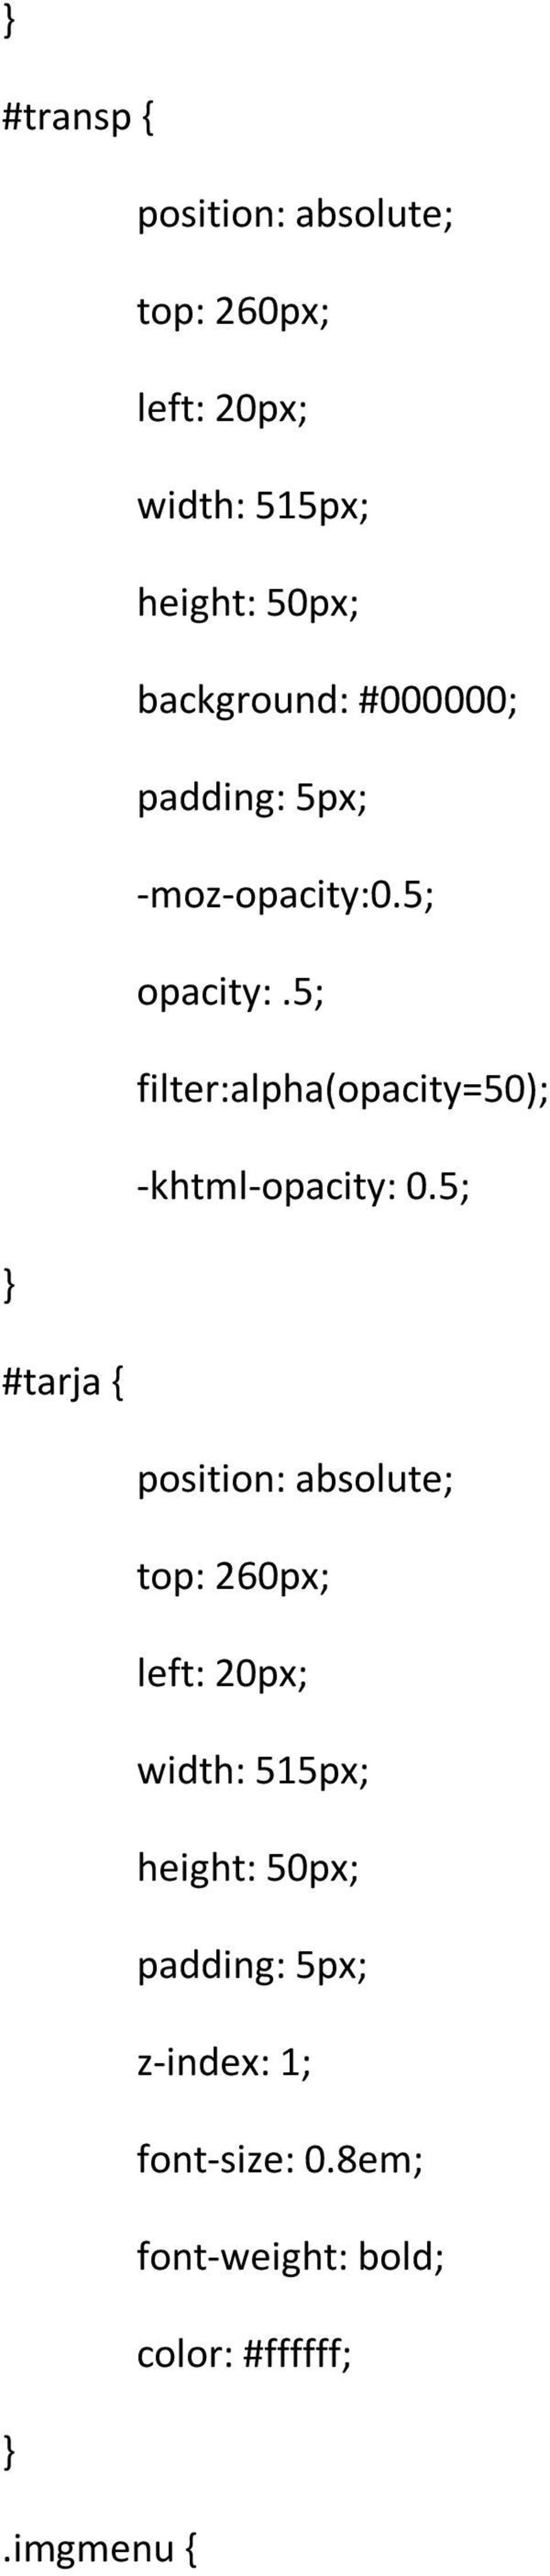 5; filter:alpha(opacity=50); -khtml-opacity: 0.